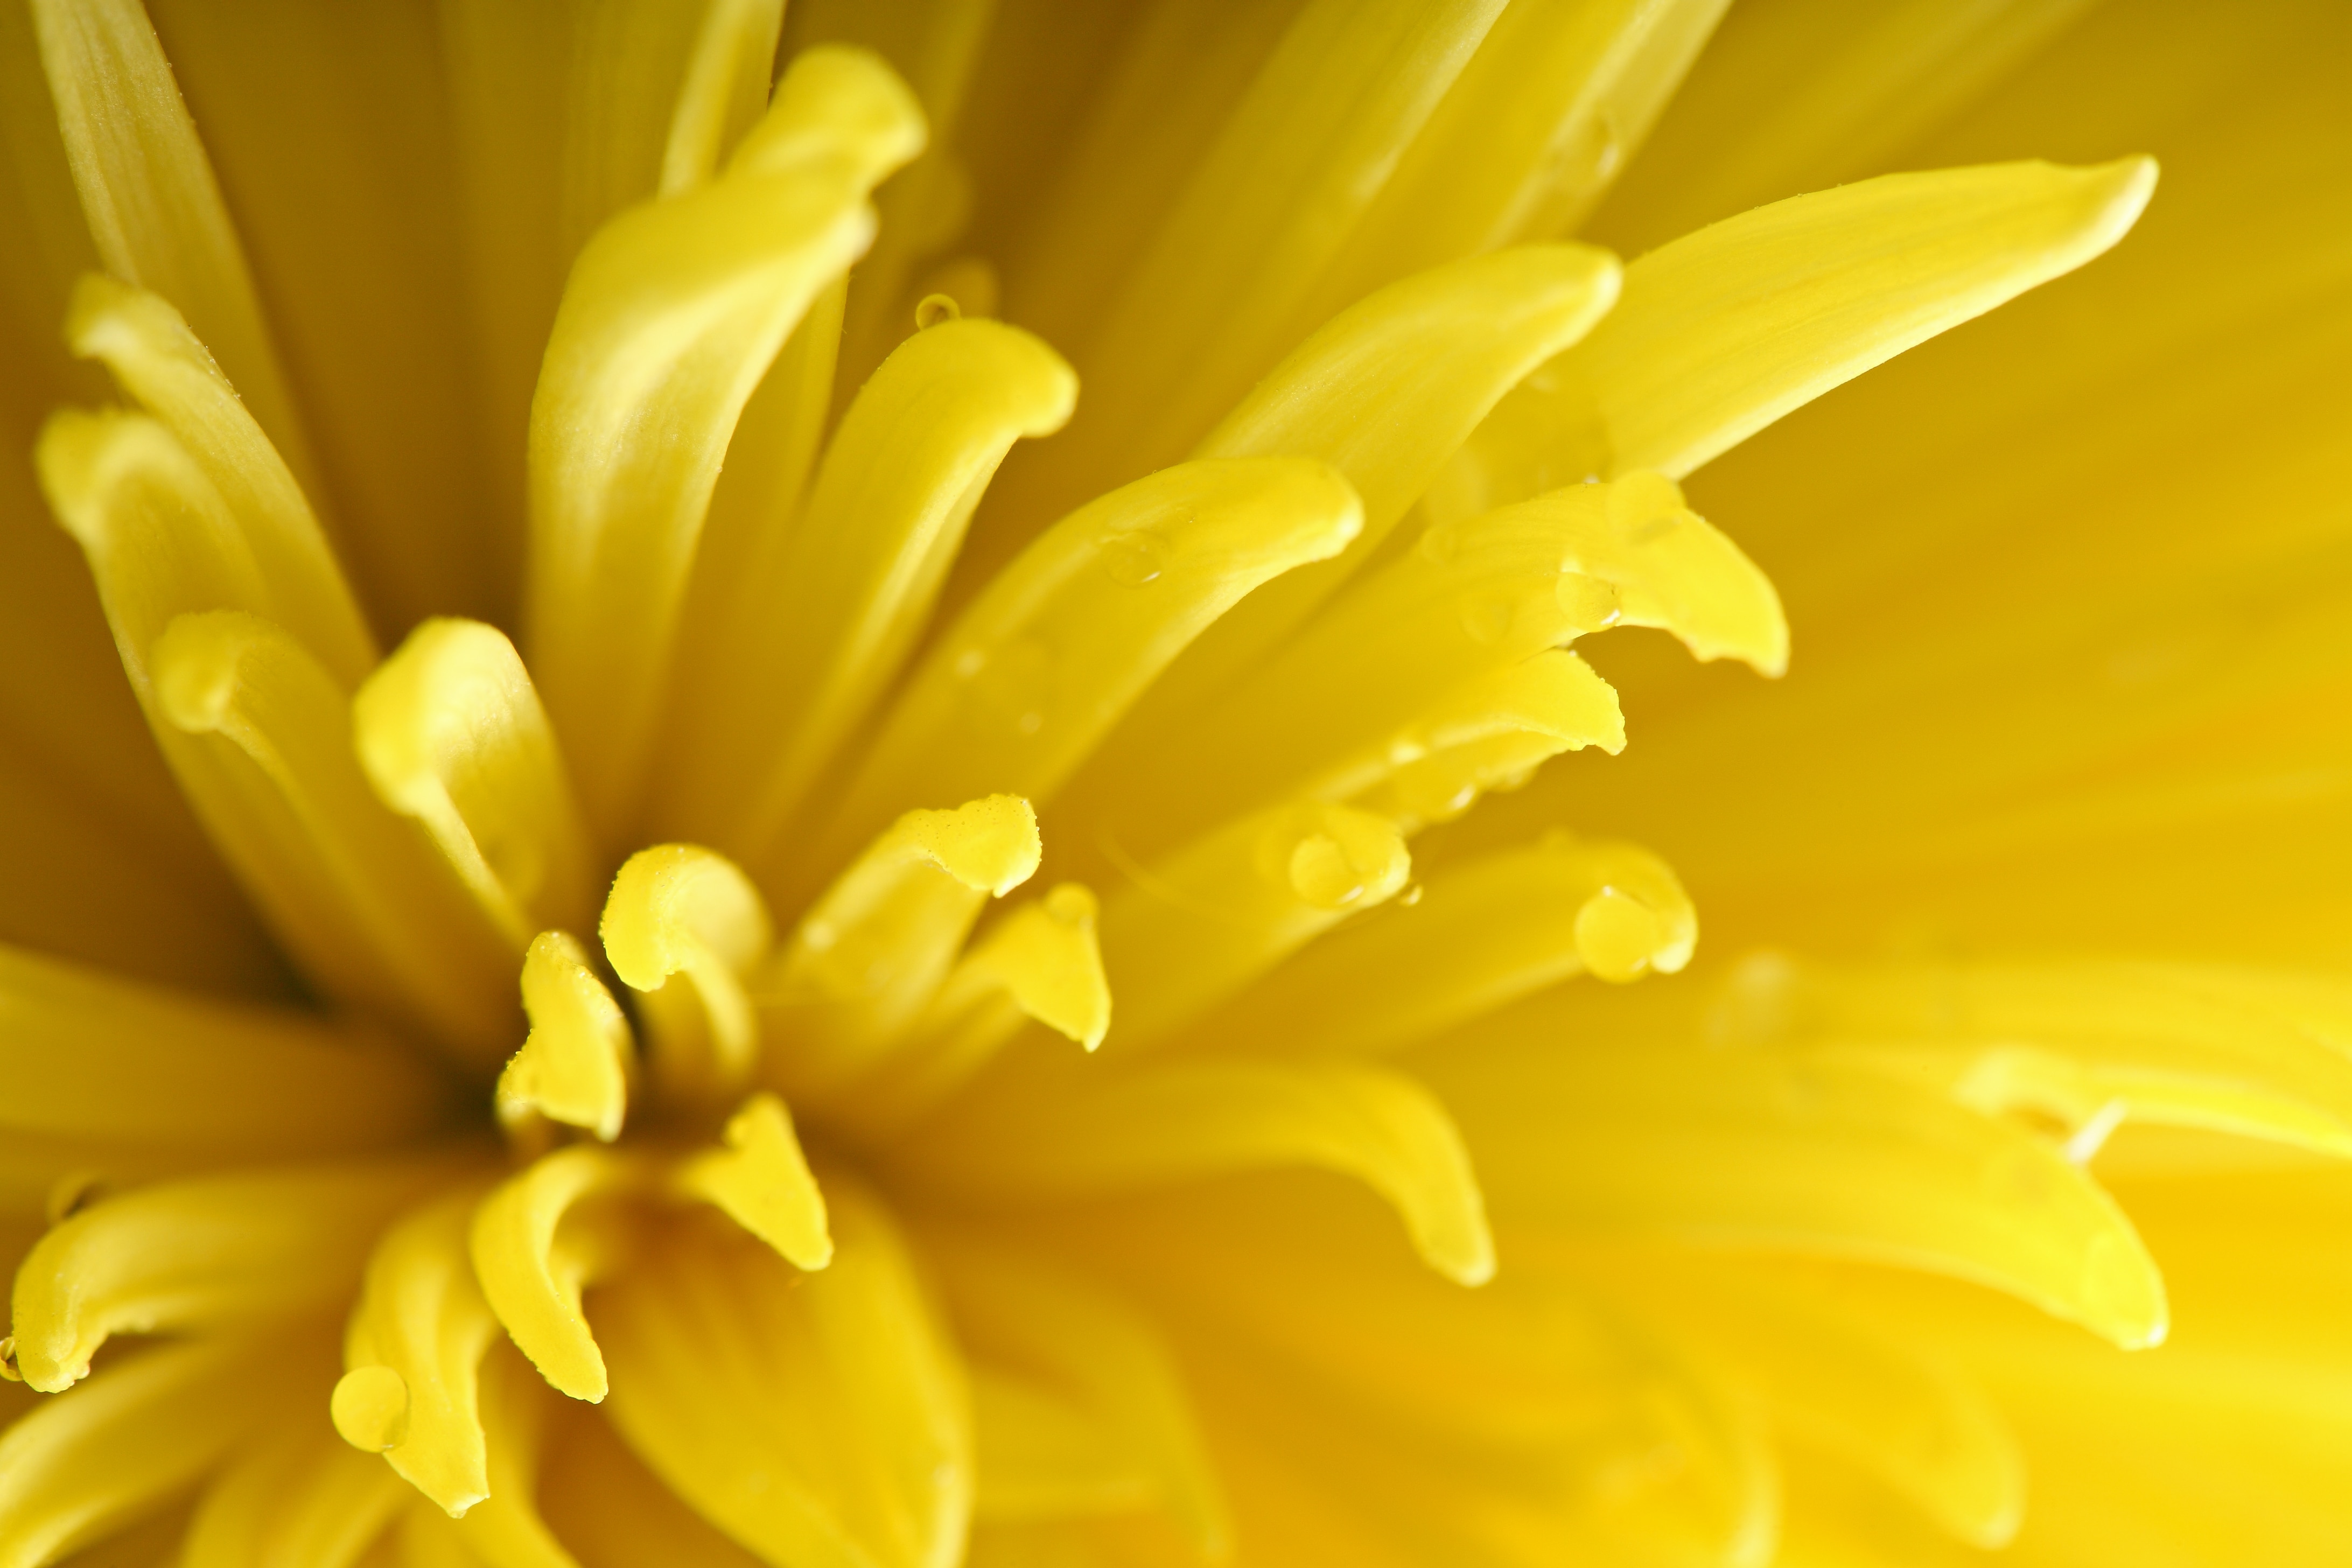 yellow chrysanthemum macro photography